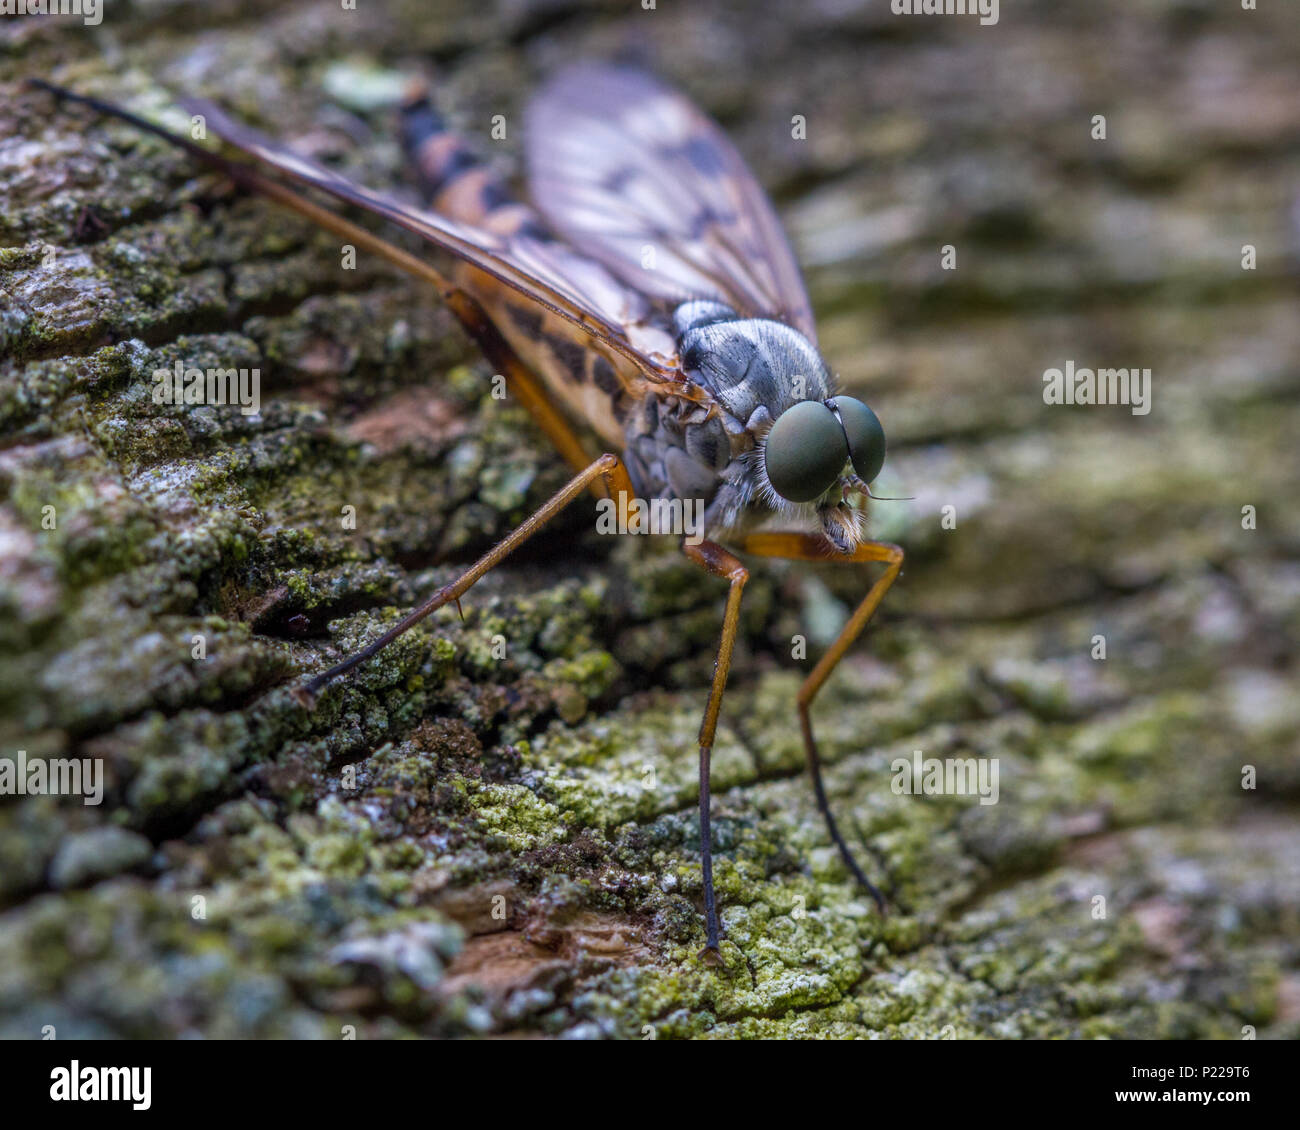 La faune UK : une vue de les yeux composés d'une downlooker snipe fly (nommé en raison de sa position en bas) Banque D'Images